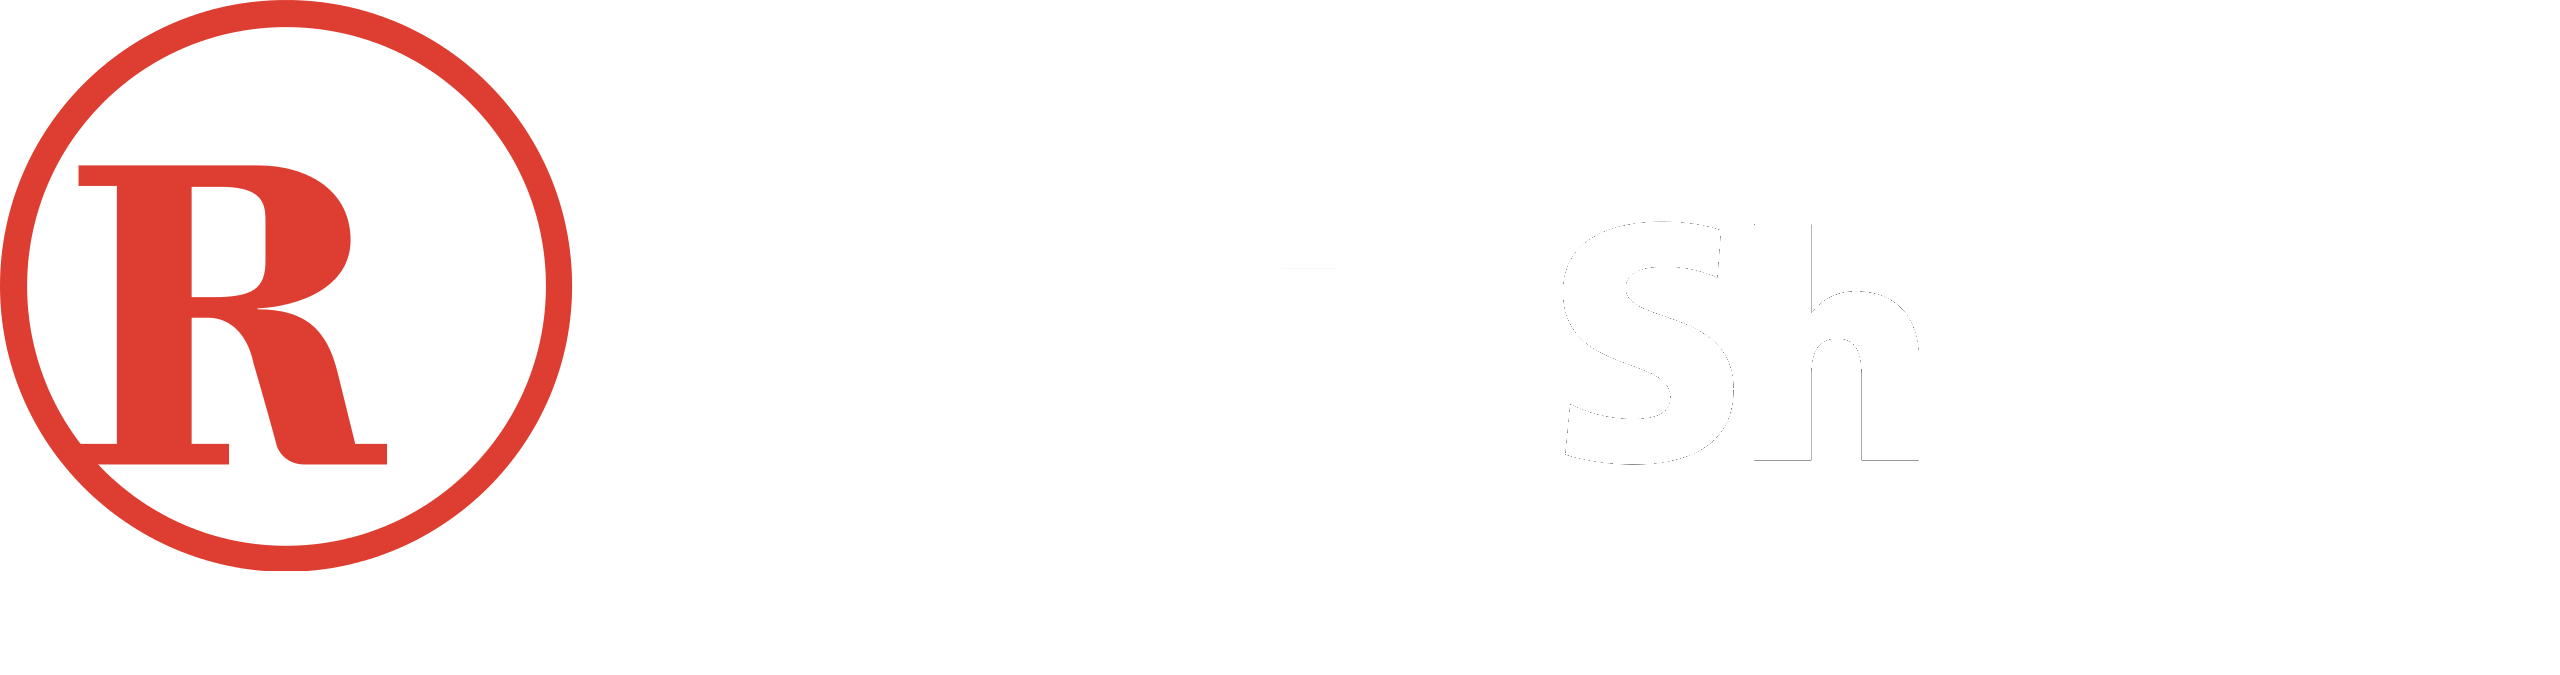 RadioShack of Bozeman